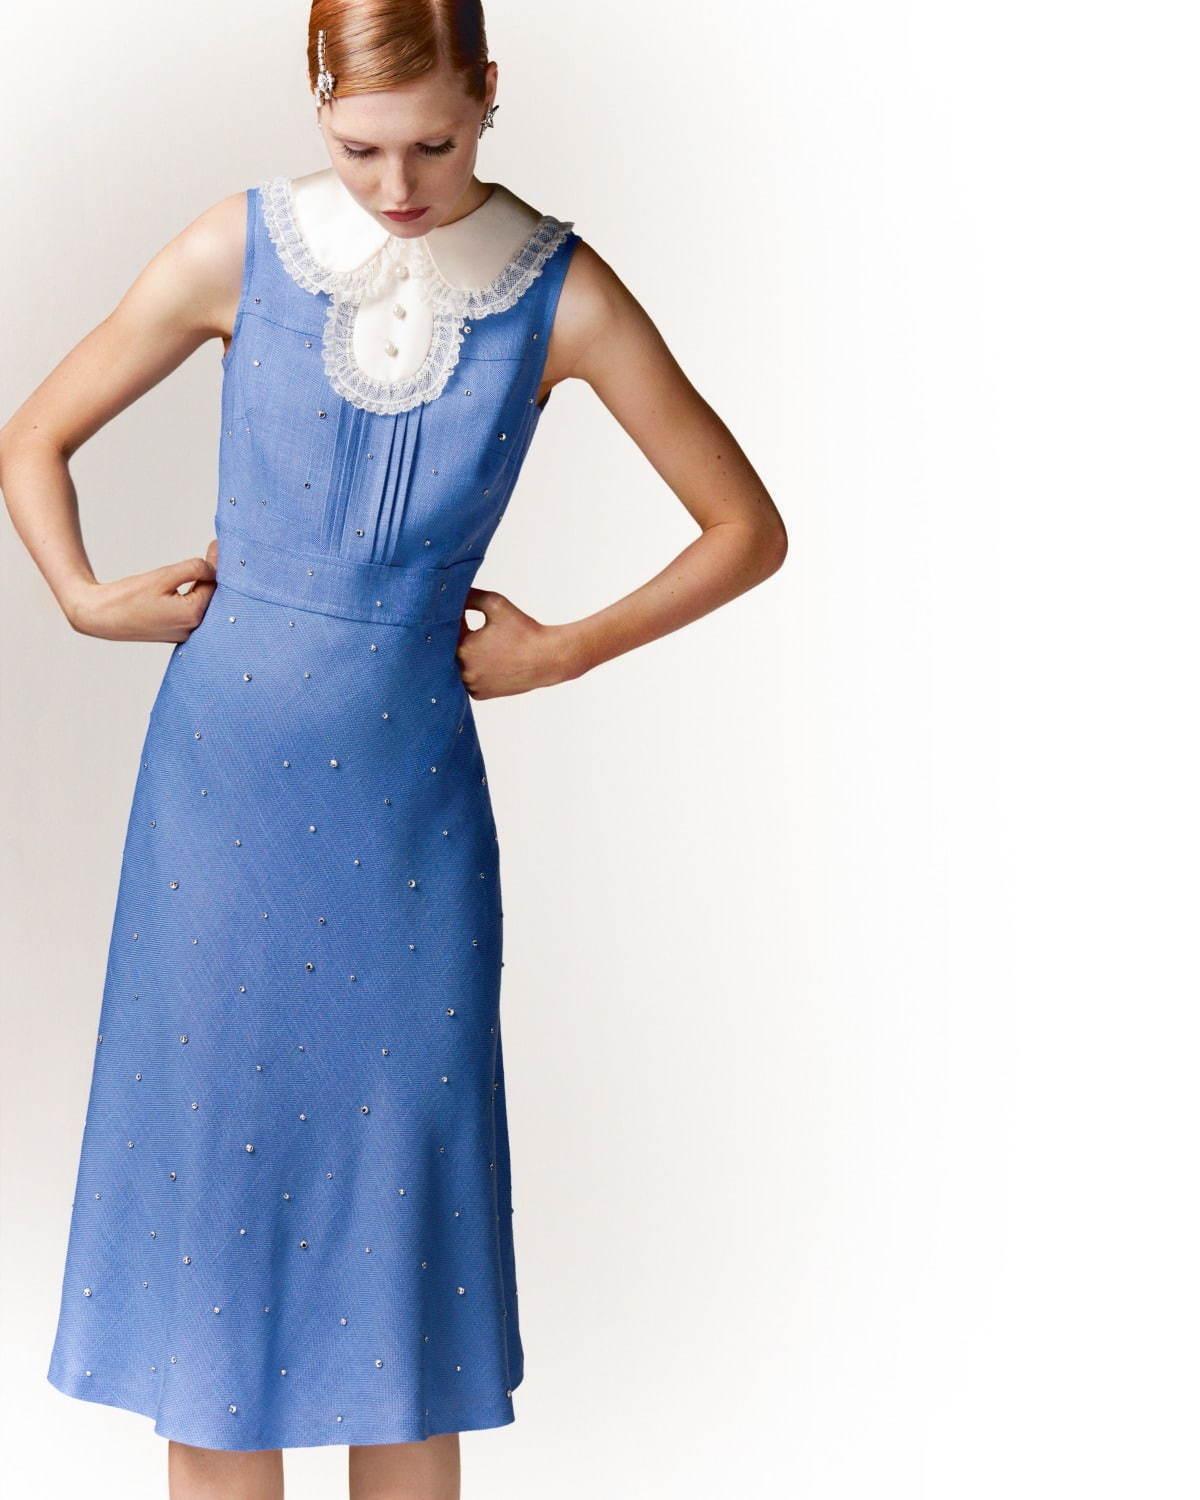 ミュウミュウ、ヴィンテージアイテムをリメイクした“1点物”ドレス - 青山店で全8種類発売 コピー